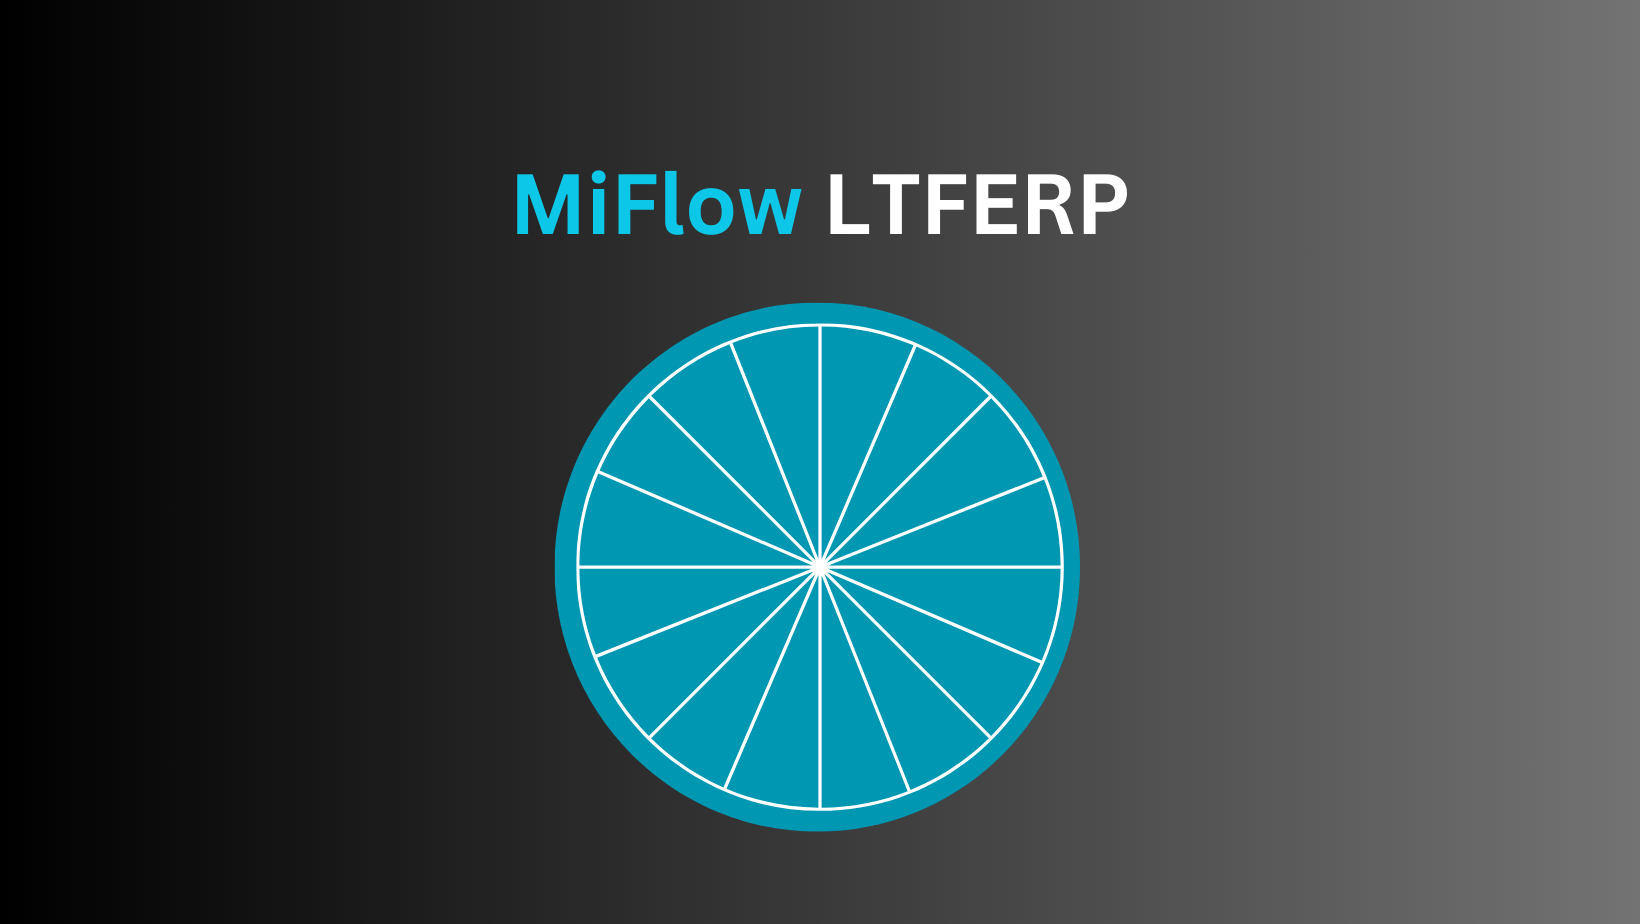 MiFlow LTFERP